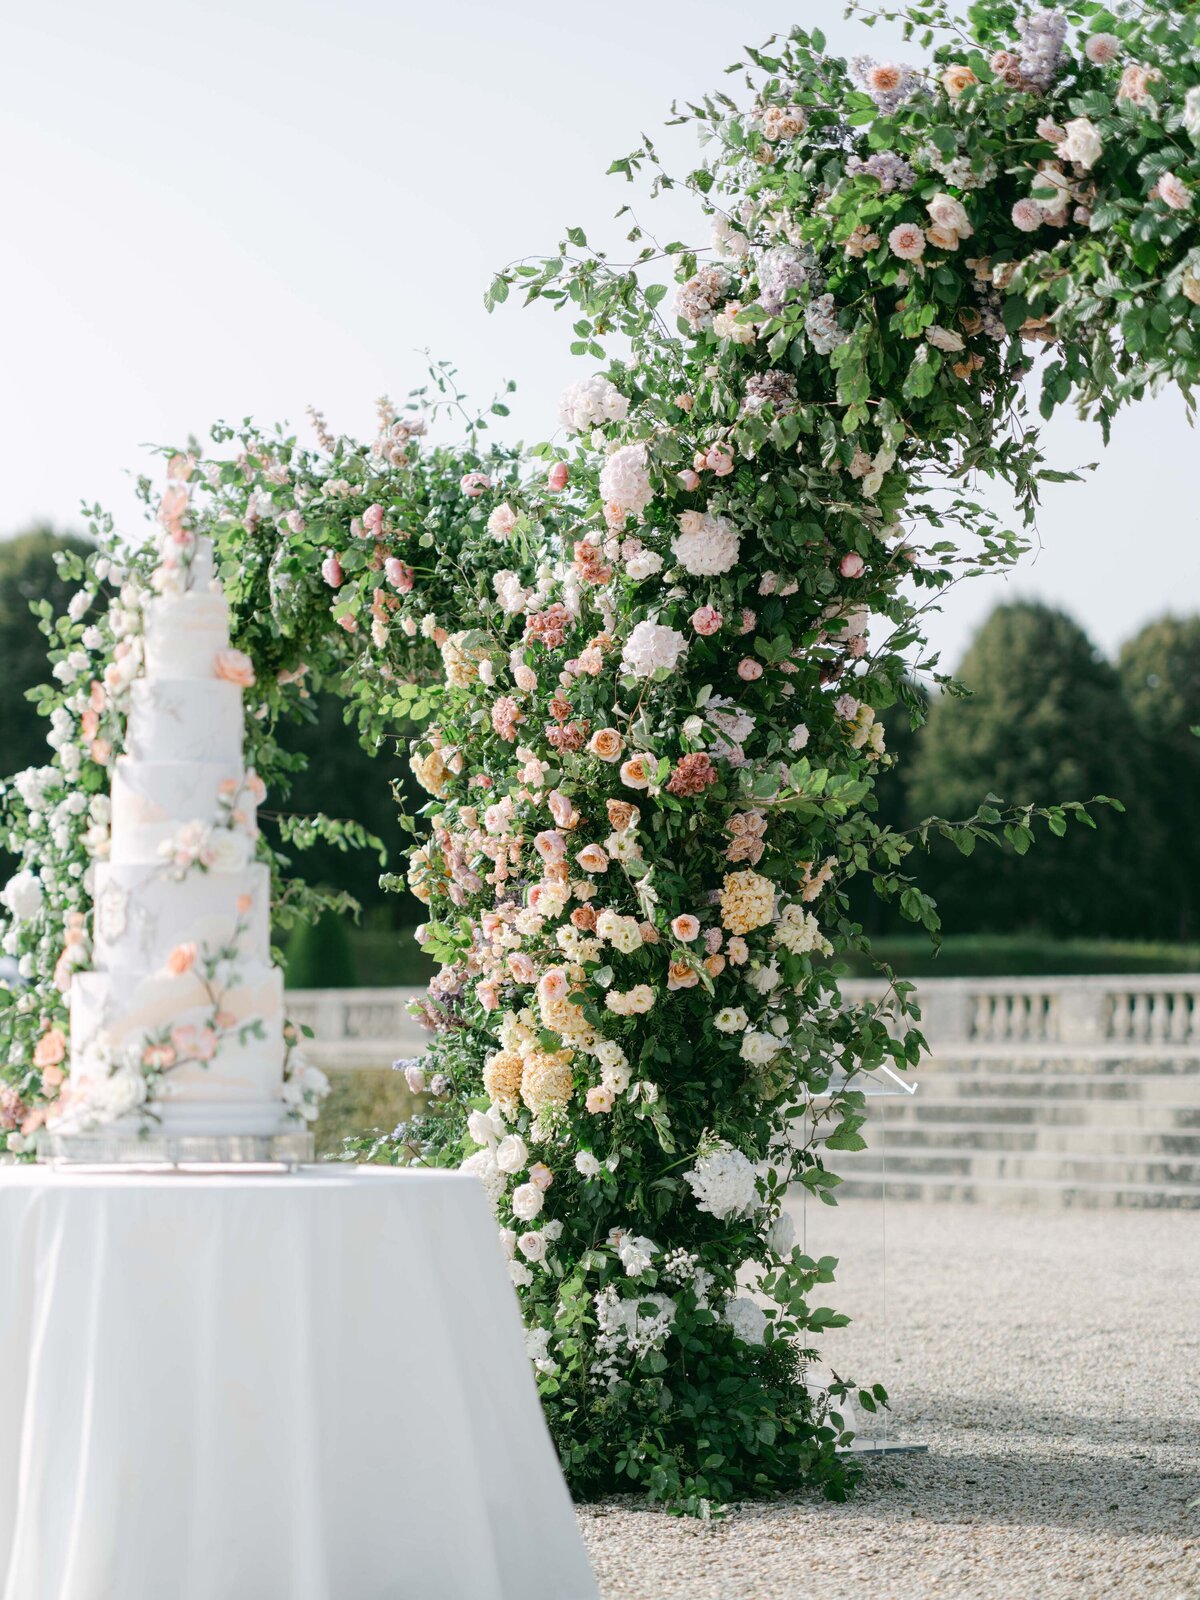 Chateau-Vaux-le-vicomte-wedding-florist-FLORAISON9